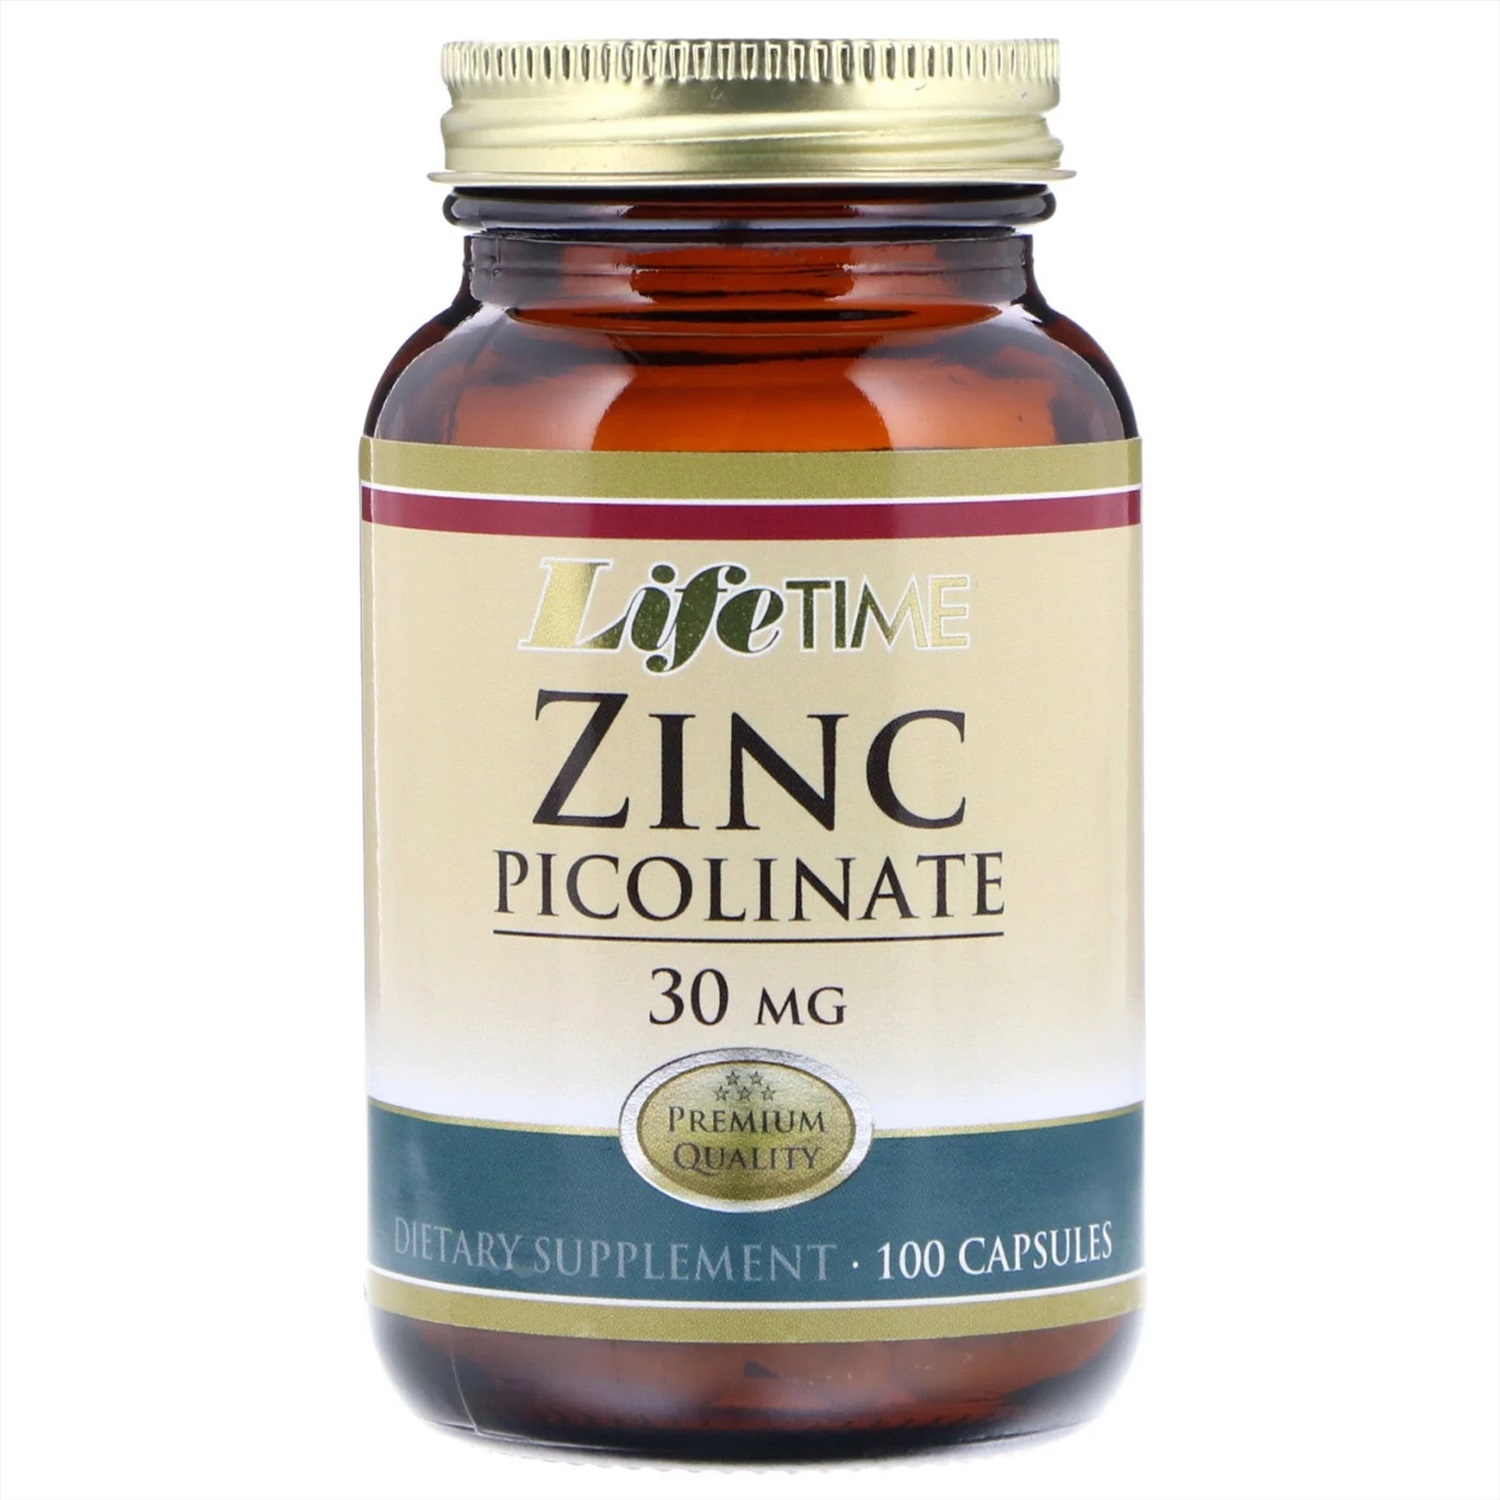 Цинк пиколинат аптека. Цинк пиколинат 30 мг Life time. Витамины цинк пиколинат. Цинк витамины Picolinate. Zinc Picolinate капсулы.